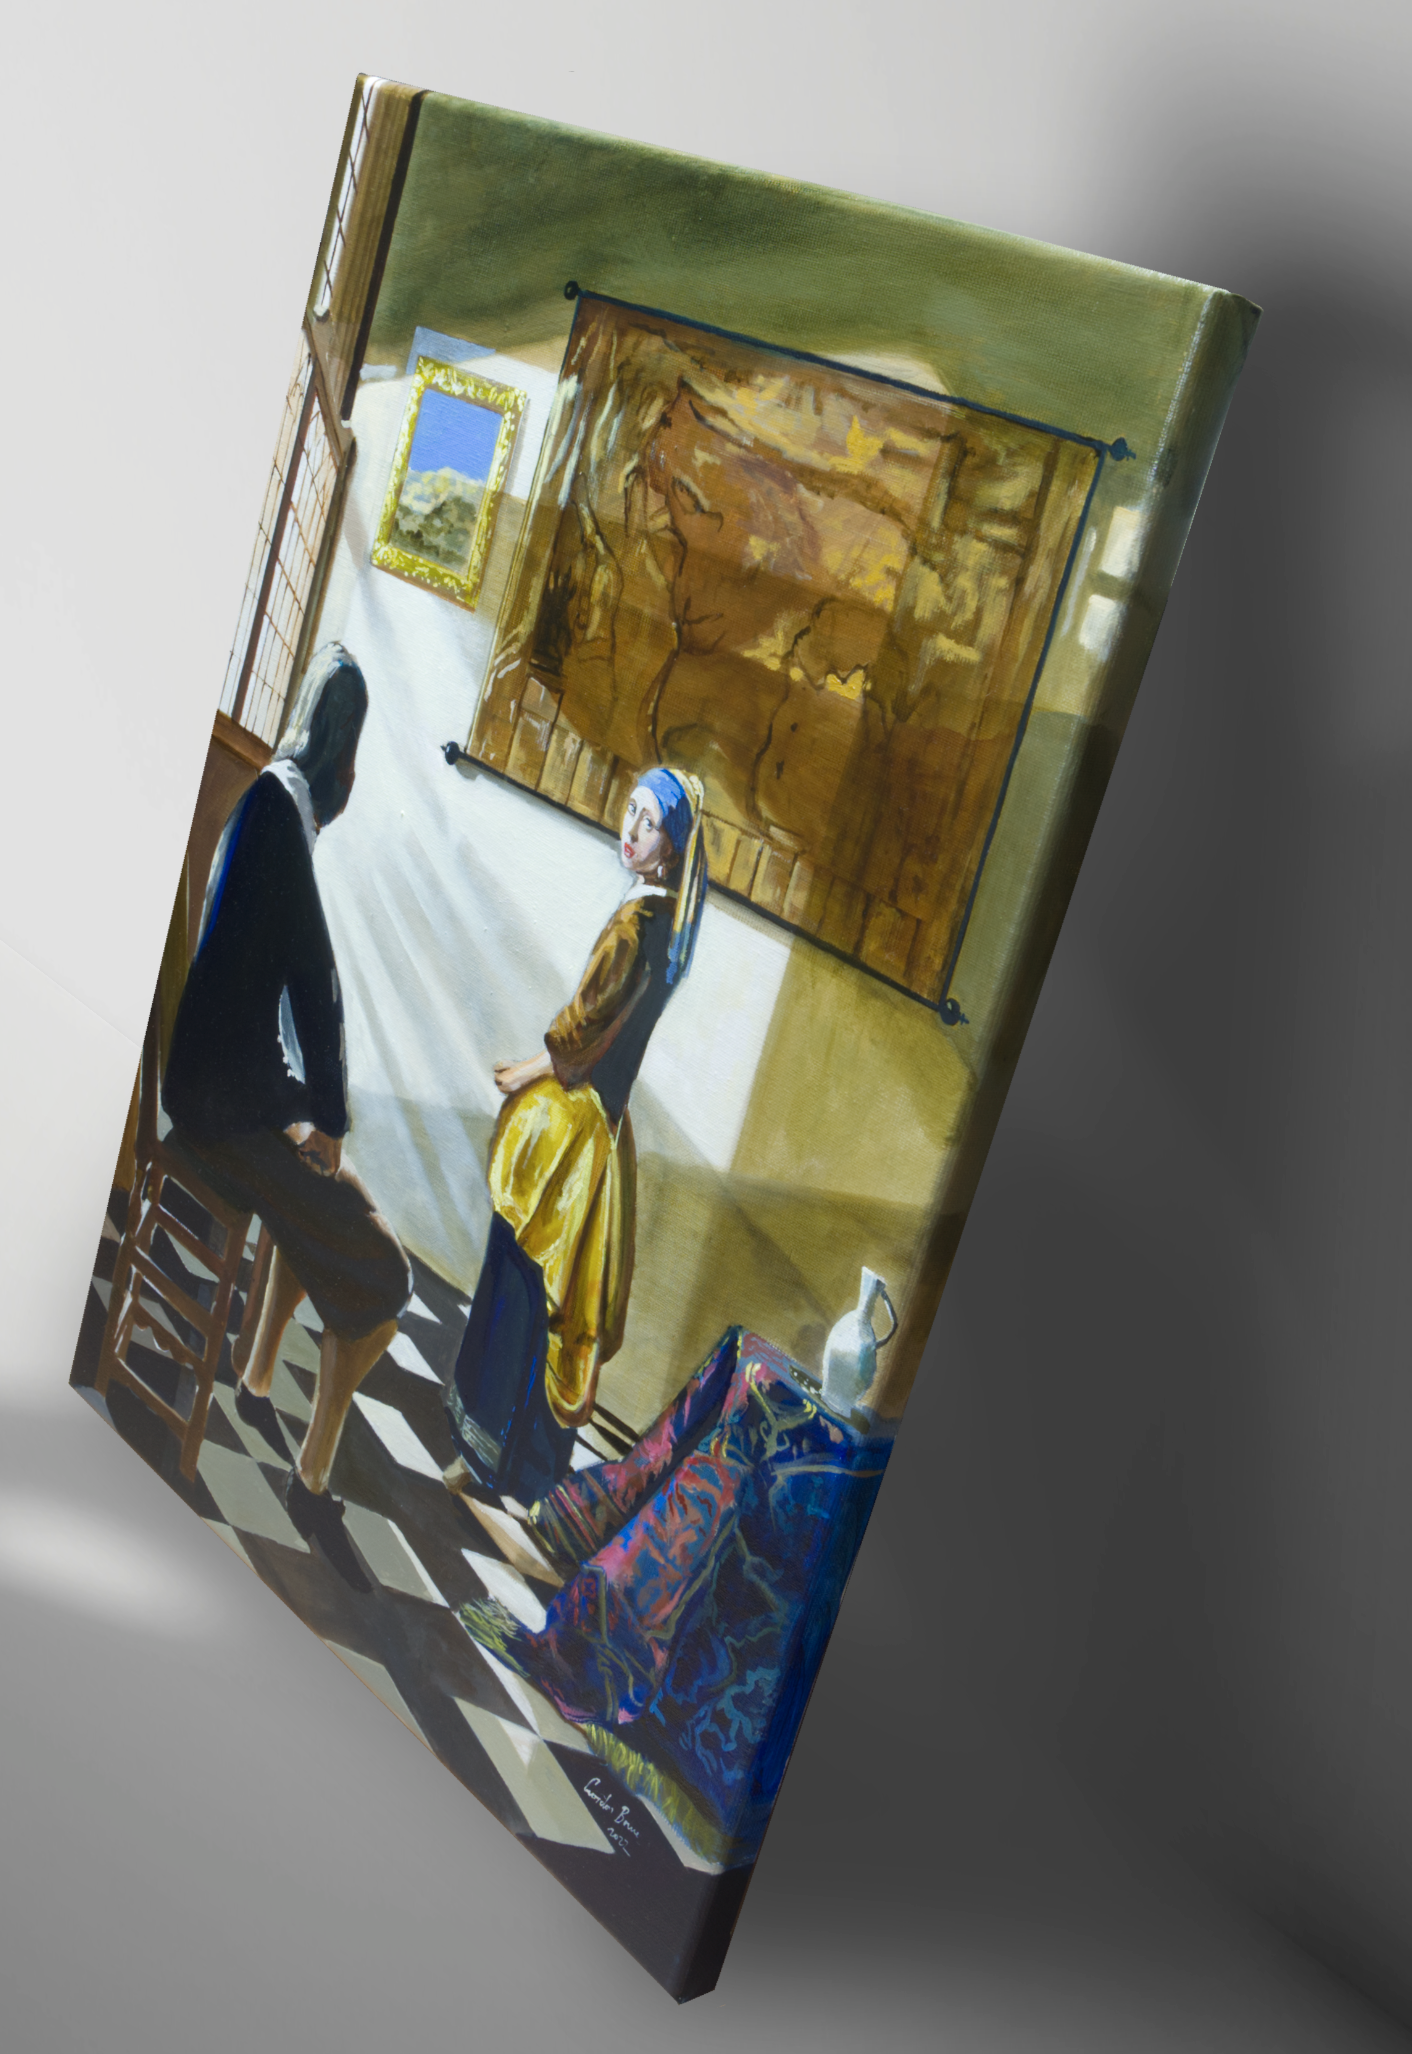 Vermeer’s new model original painting